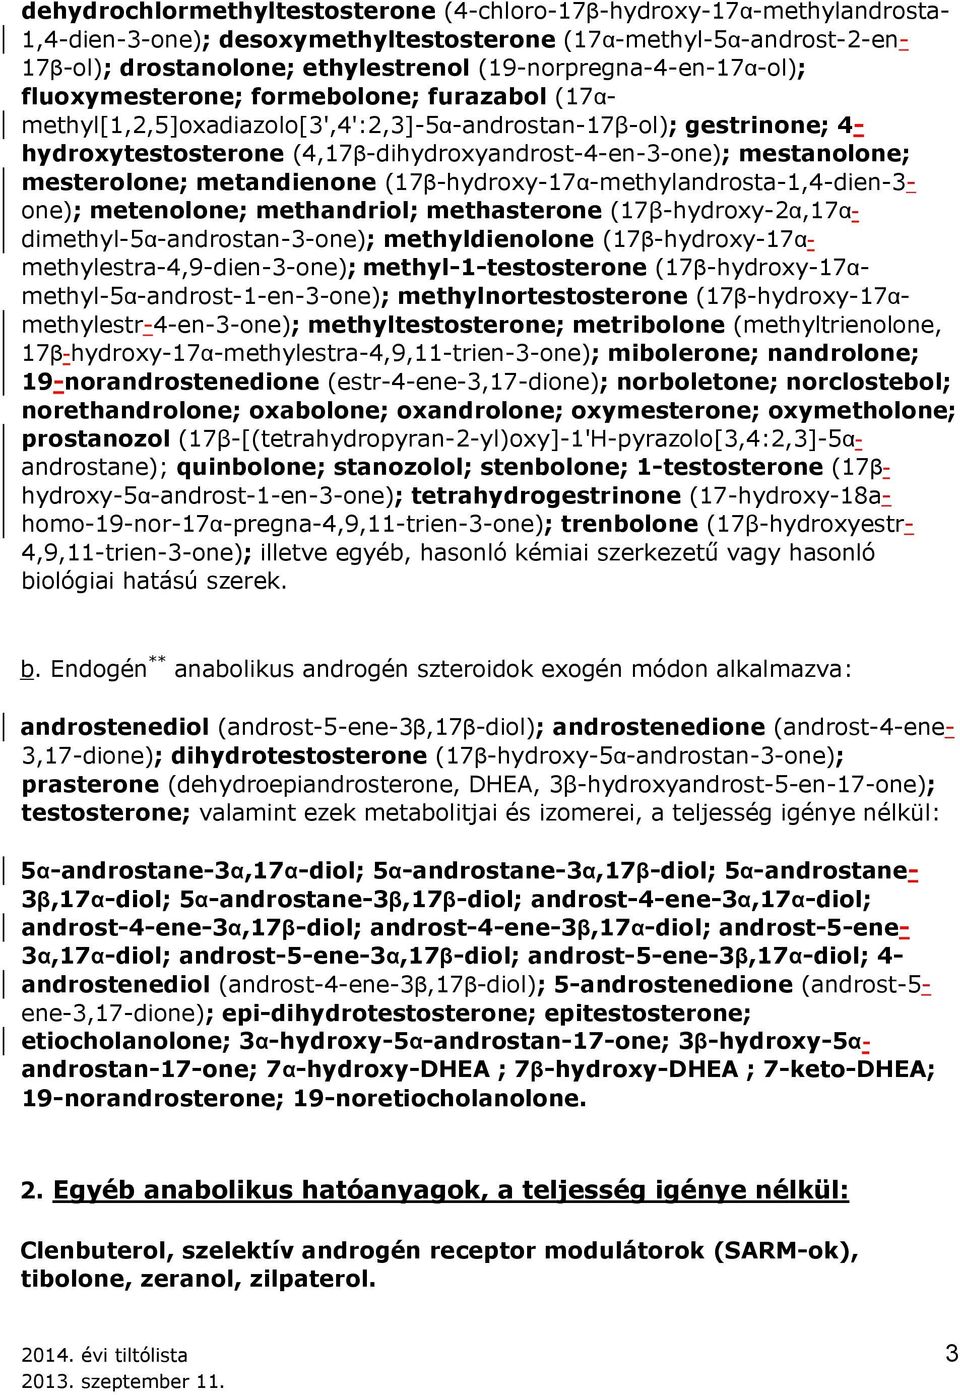 (4,17β-dihydroxyandrost-4-en-3-one); mestanolone; mesterolone; metandienone (17β-hydroxy-17α-methylandrosta-1,4-dien-3- one); metenolone; methandriol; methasterone